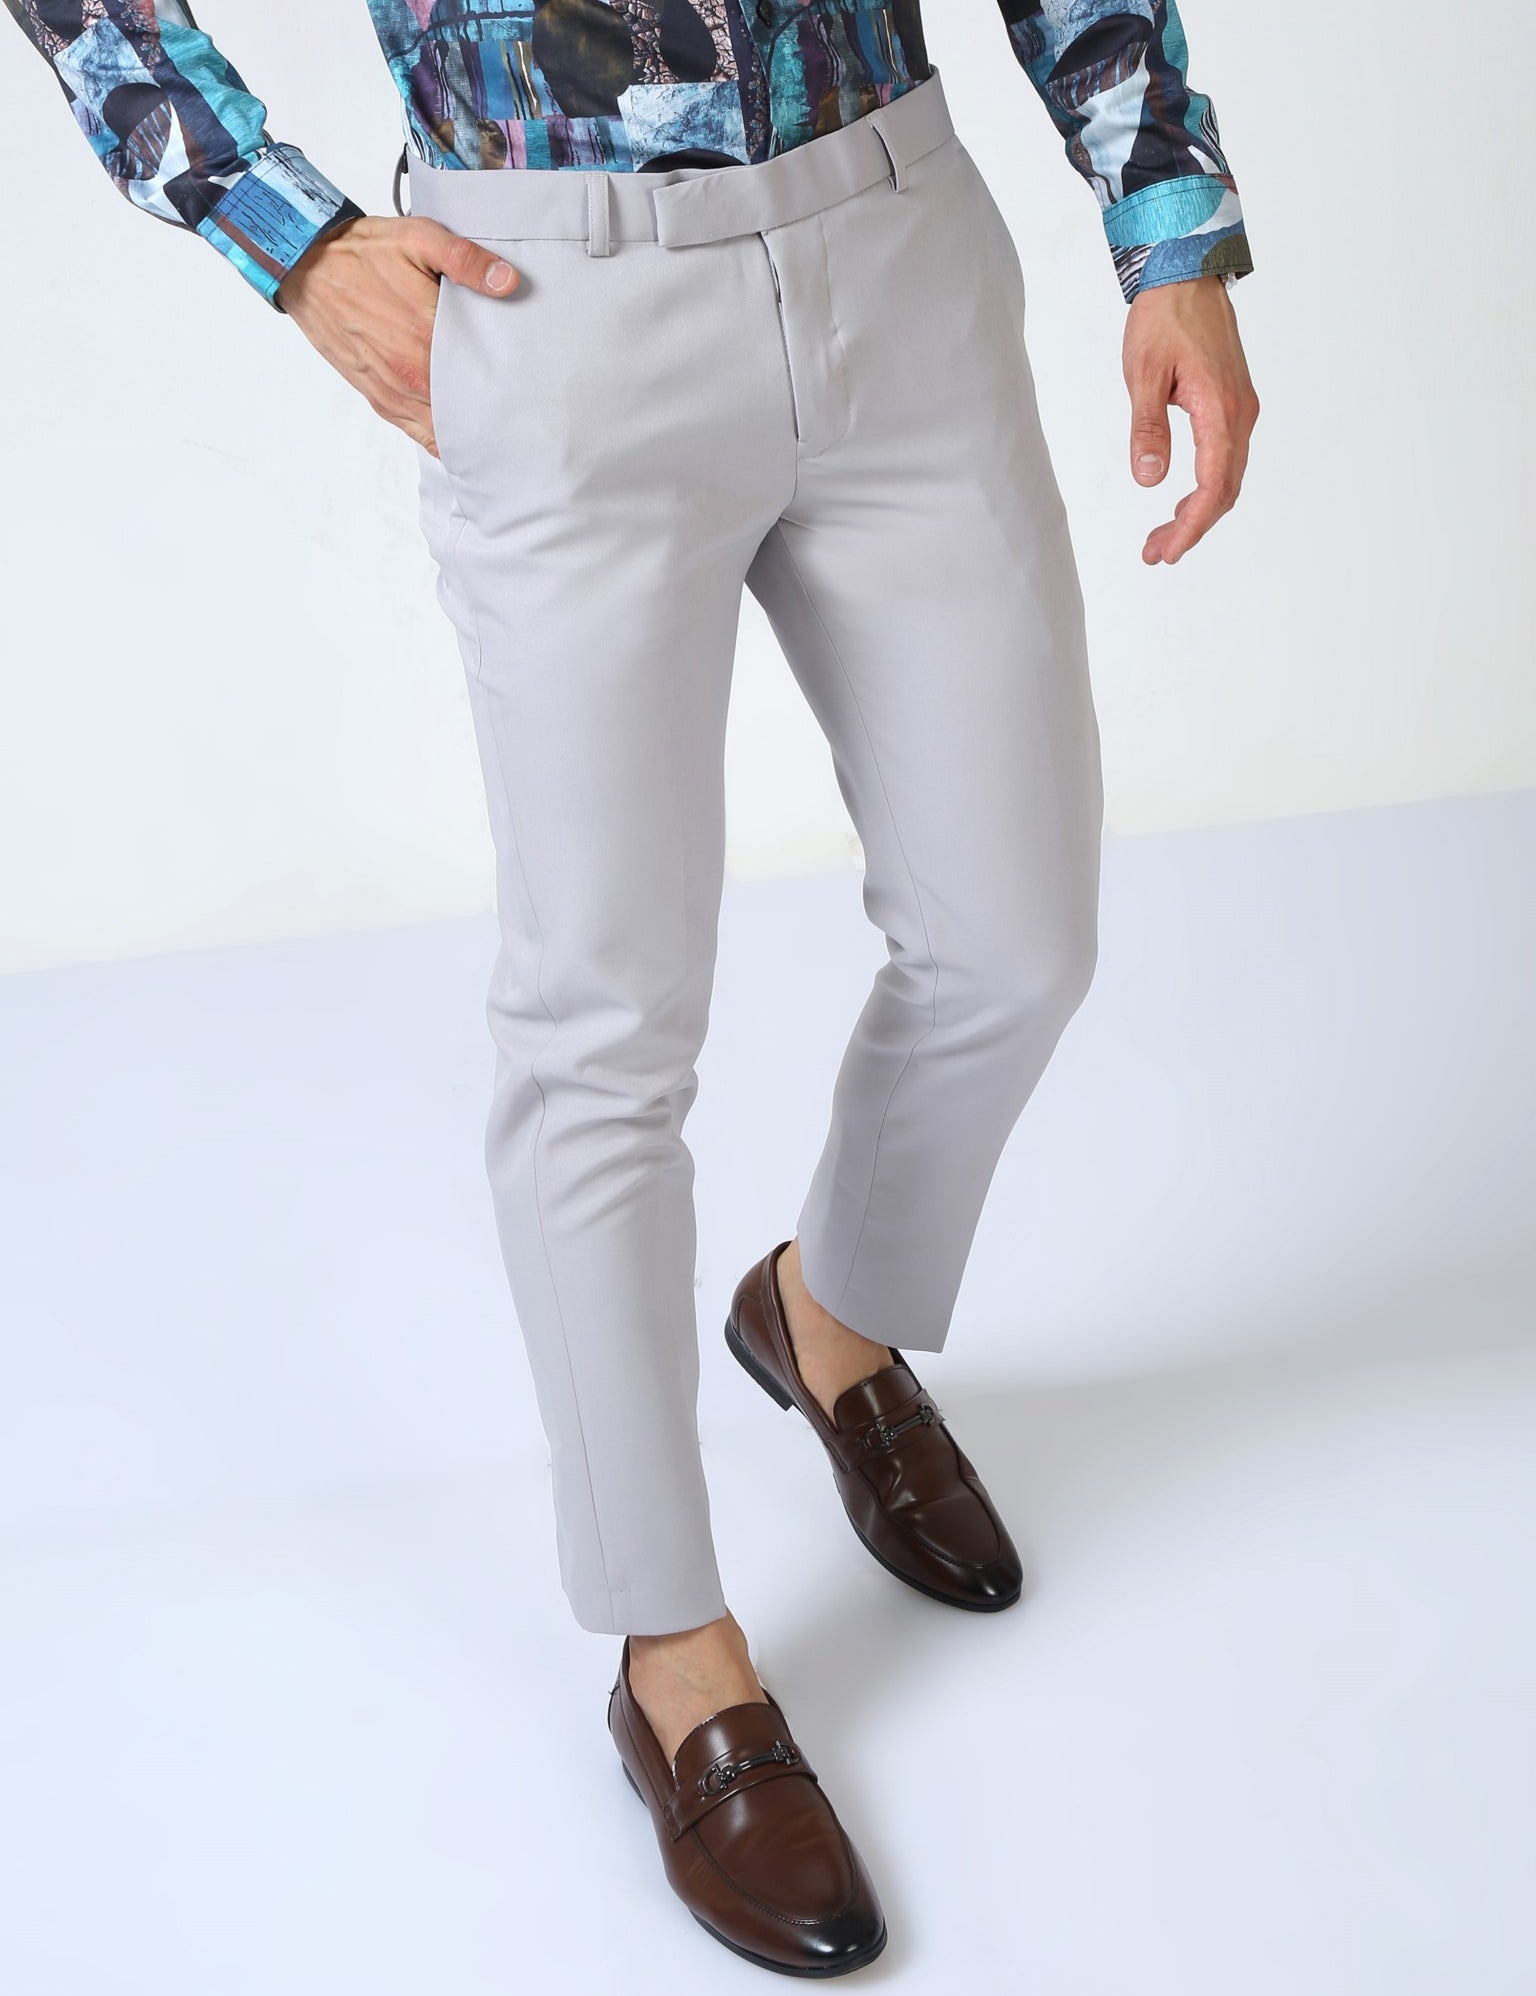 Slack Light Gray Trouser